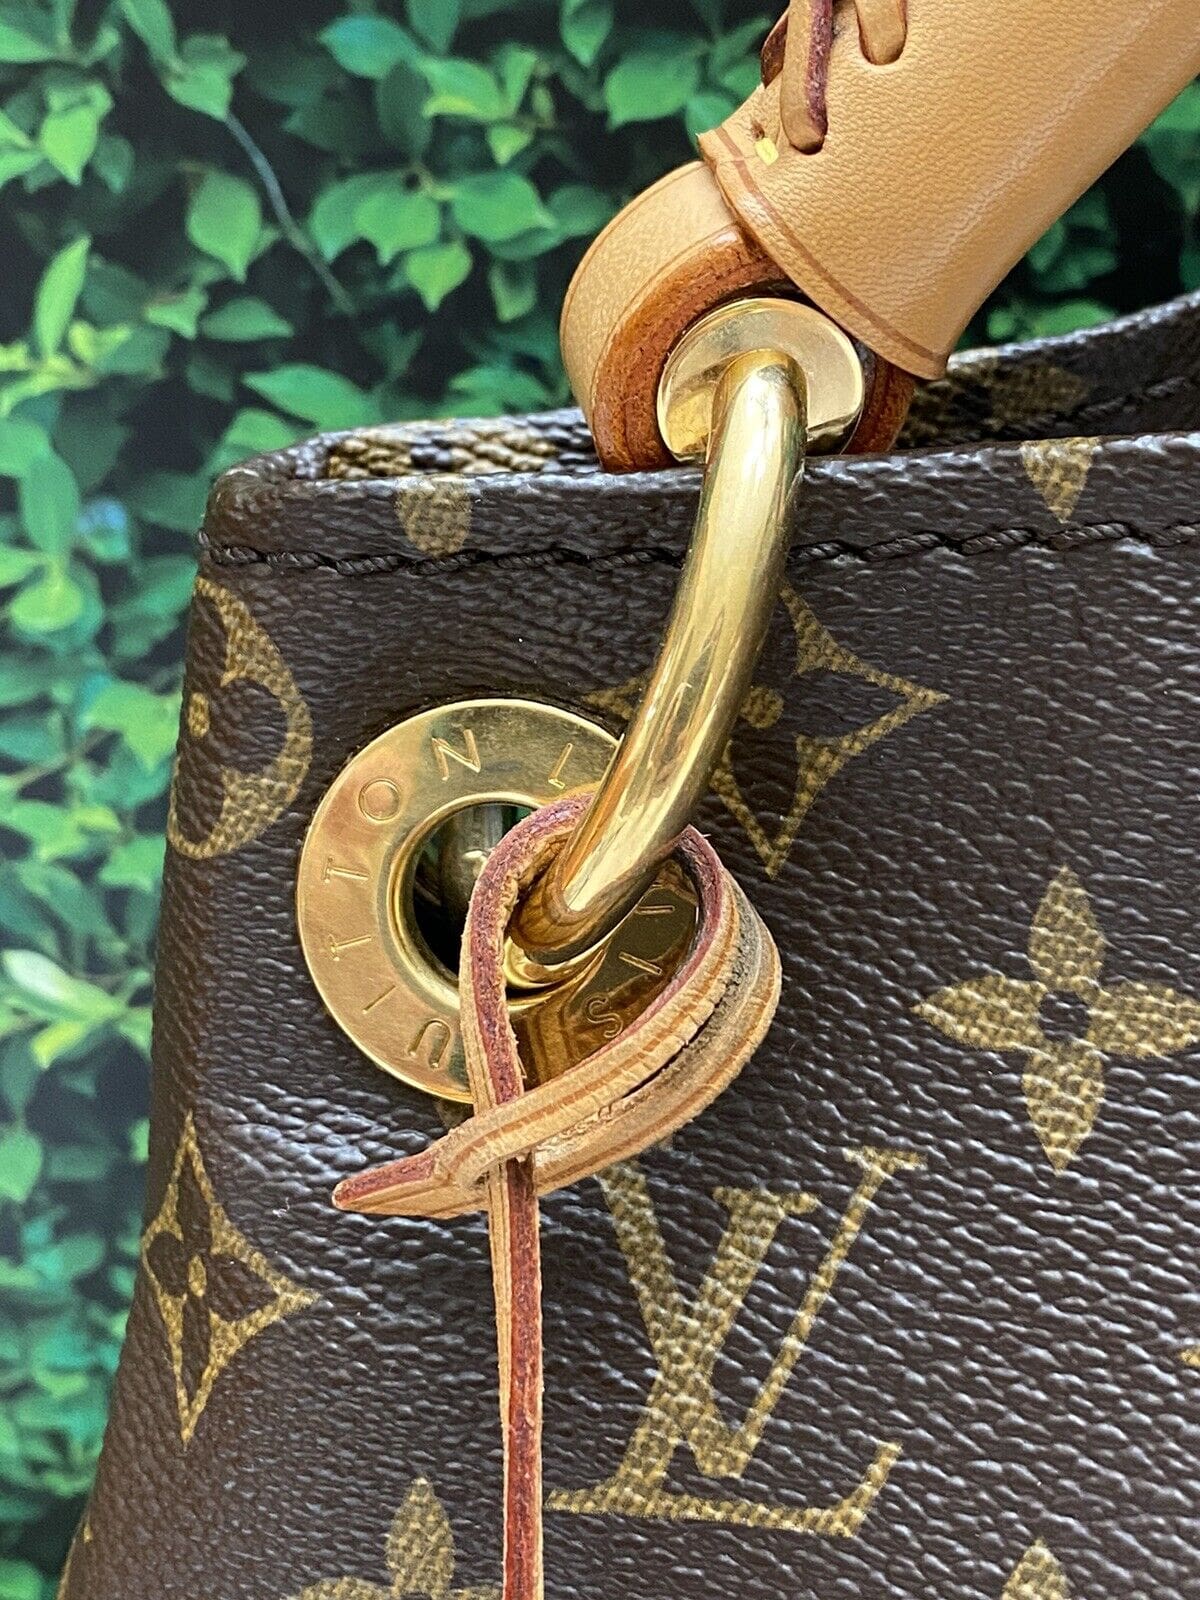 Louis Vuitton Artsy MM Monogram Shoulder Bag Tote Purse (CA0191) - Reetzy